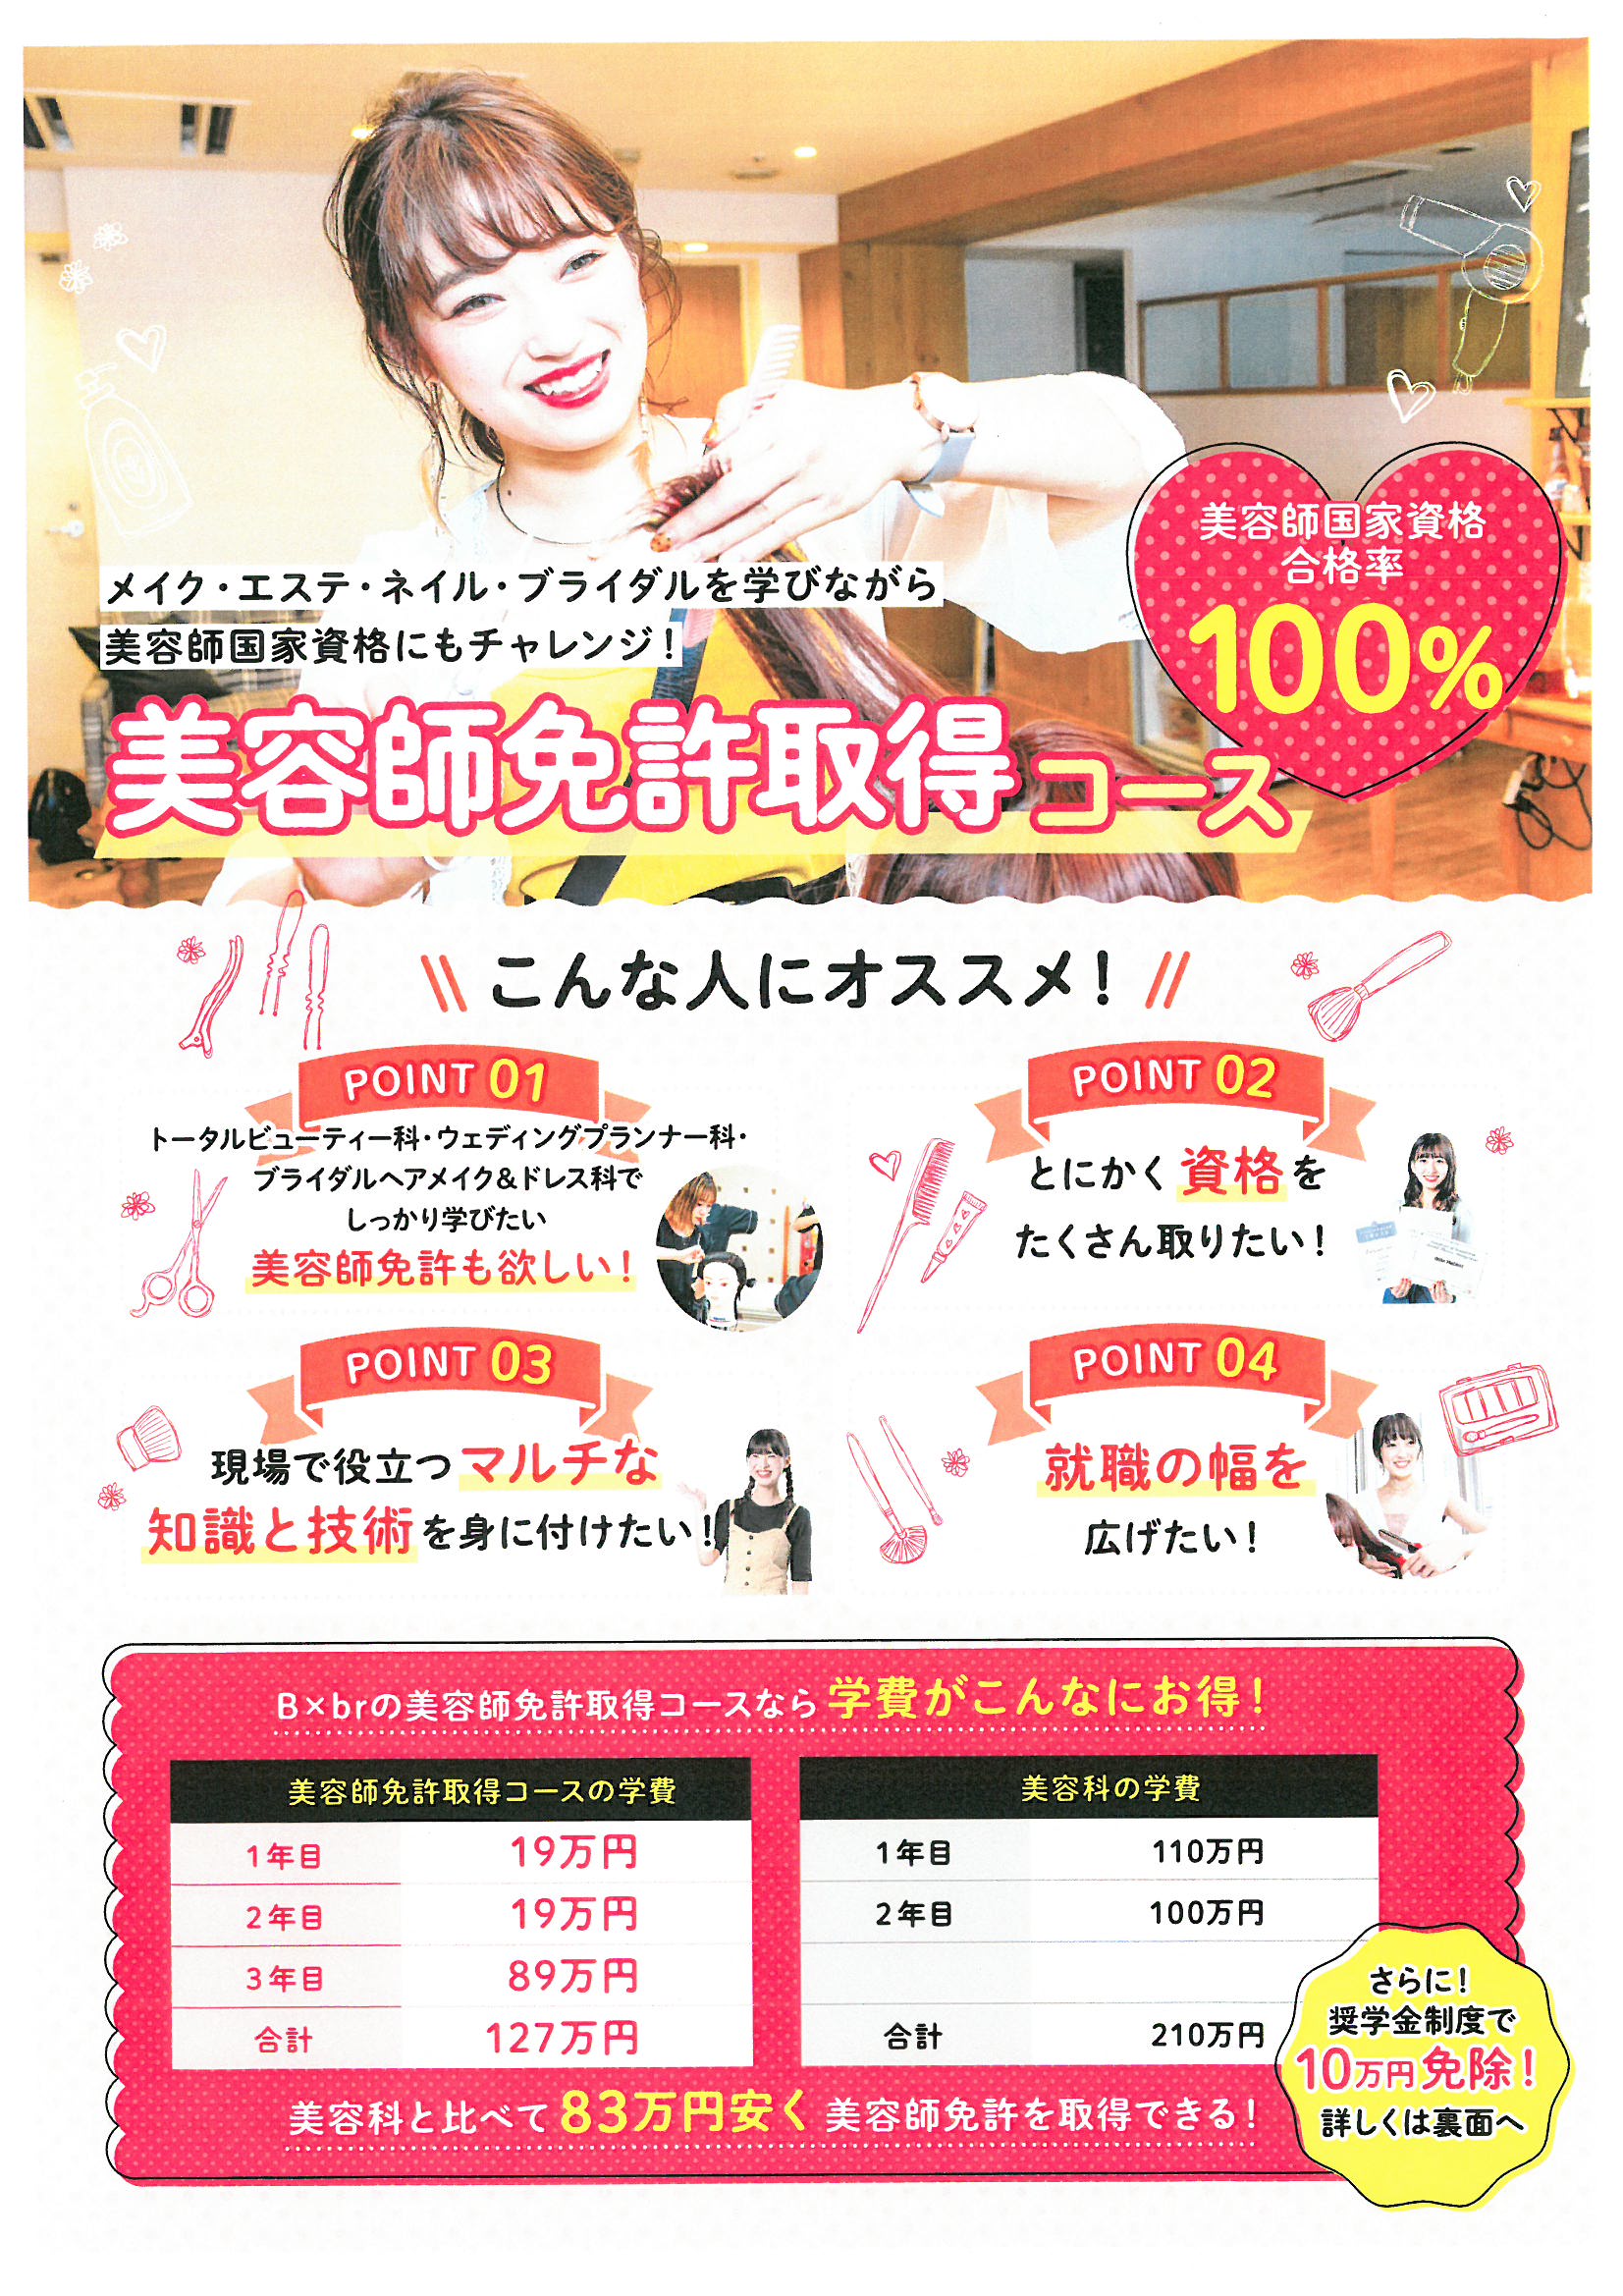 美容師国家資格がとれる３年制 美容師免許取得コース 最新情報 横浜 神奈川 の美容専門学校 横浜ビューティー ブライダル専門学校